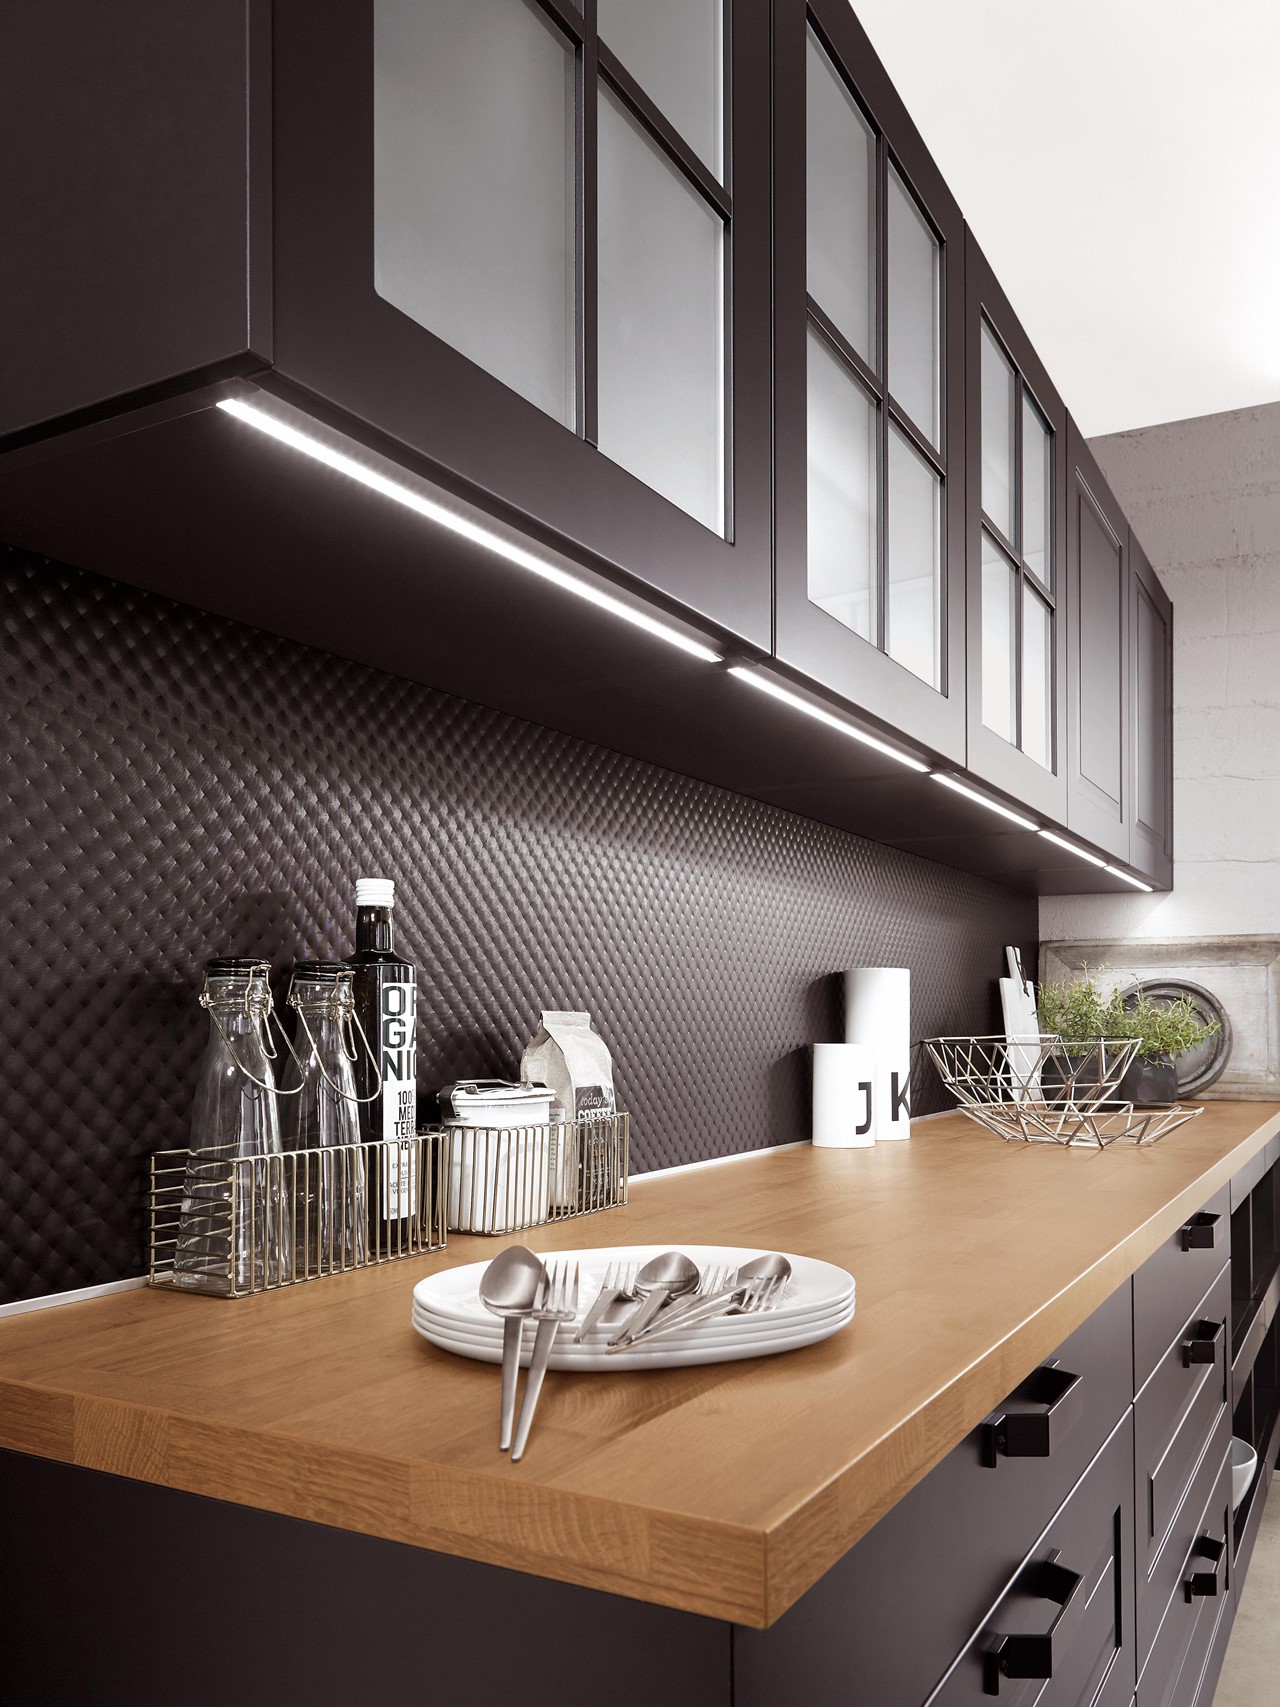 Eclairage LED plan de travail cuisine -  Eclairage sous meuble cuisine,  Eclairage, Eclairage cuisine